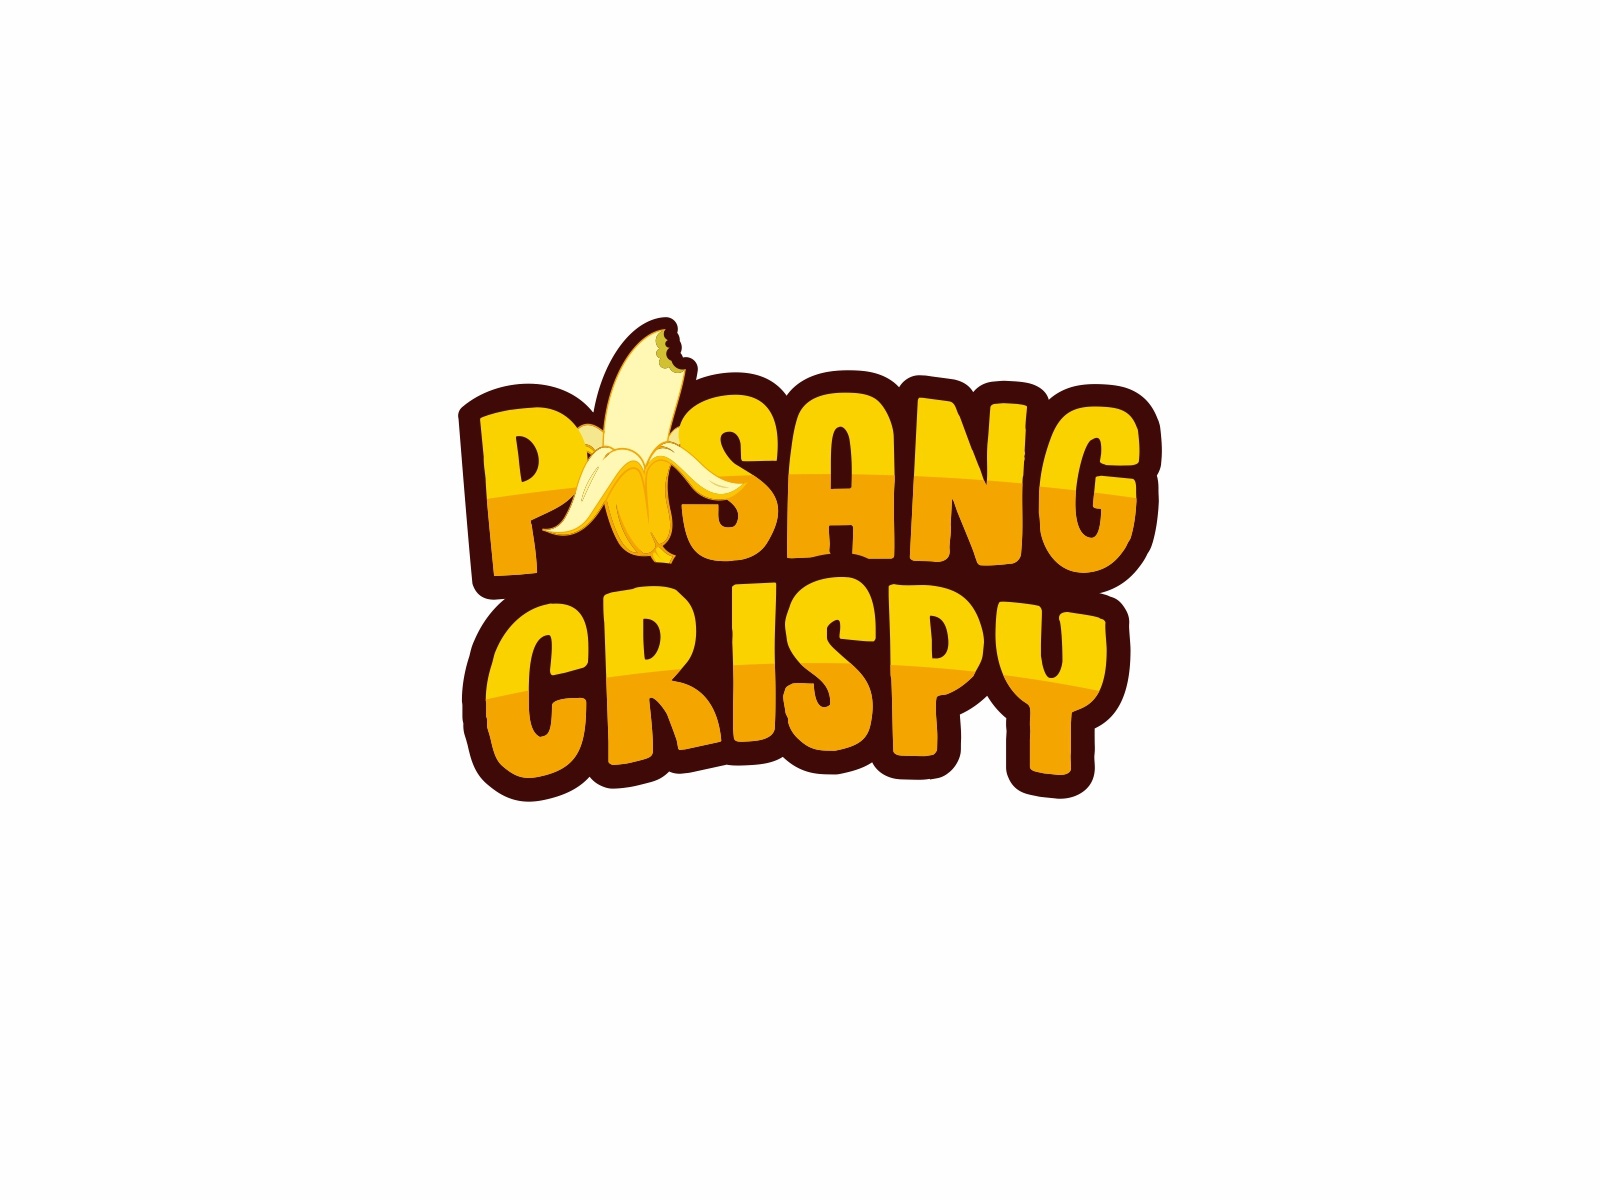 Download Logo Pisang Crispy - KibrisPDR